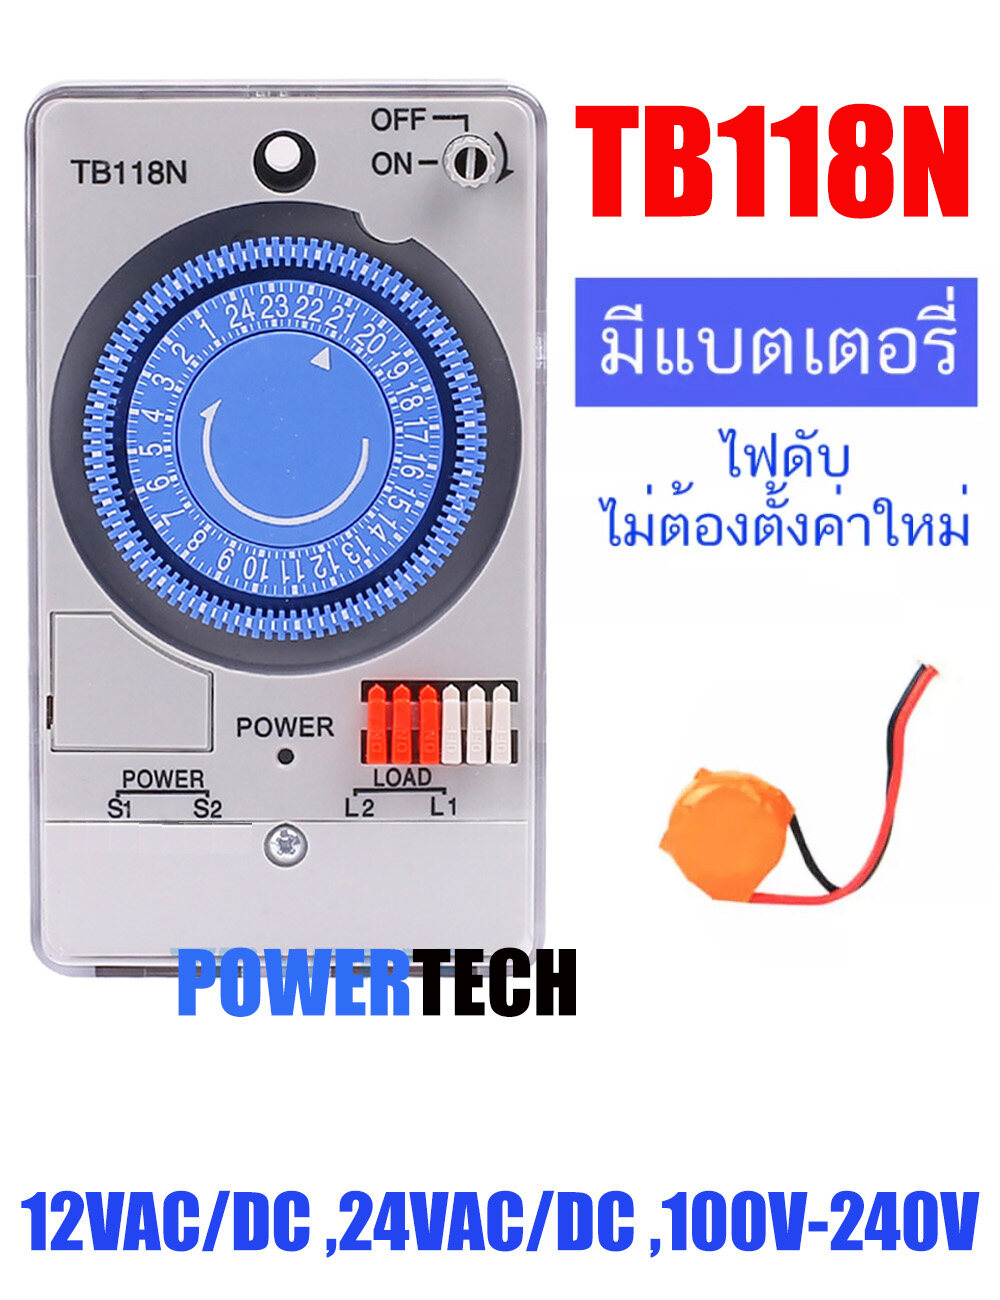 Tb118 N สวิทช์ จับเวลา สวิทซ์ตั้งเวลา Time switch รุ่น TB118N 12V,24V,100-240V